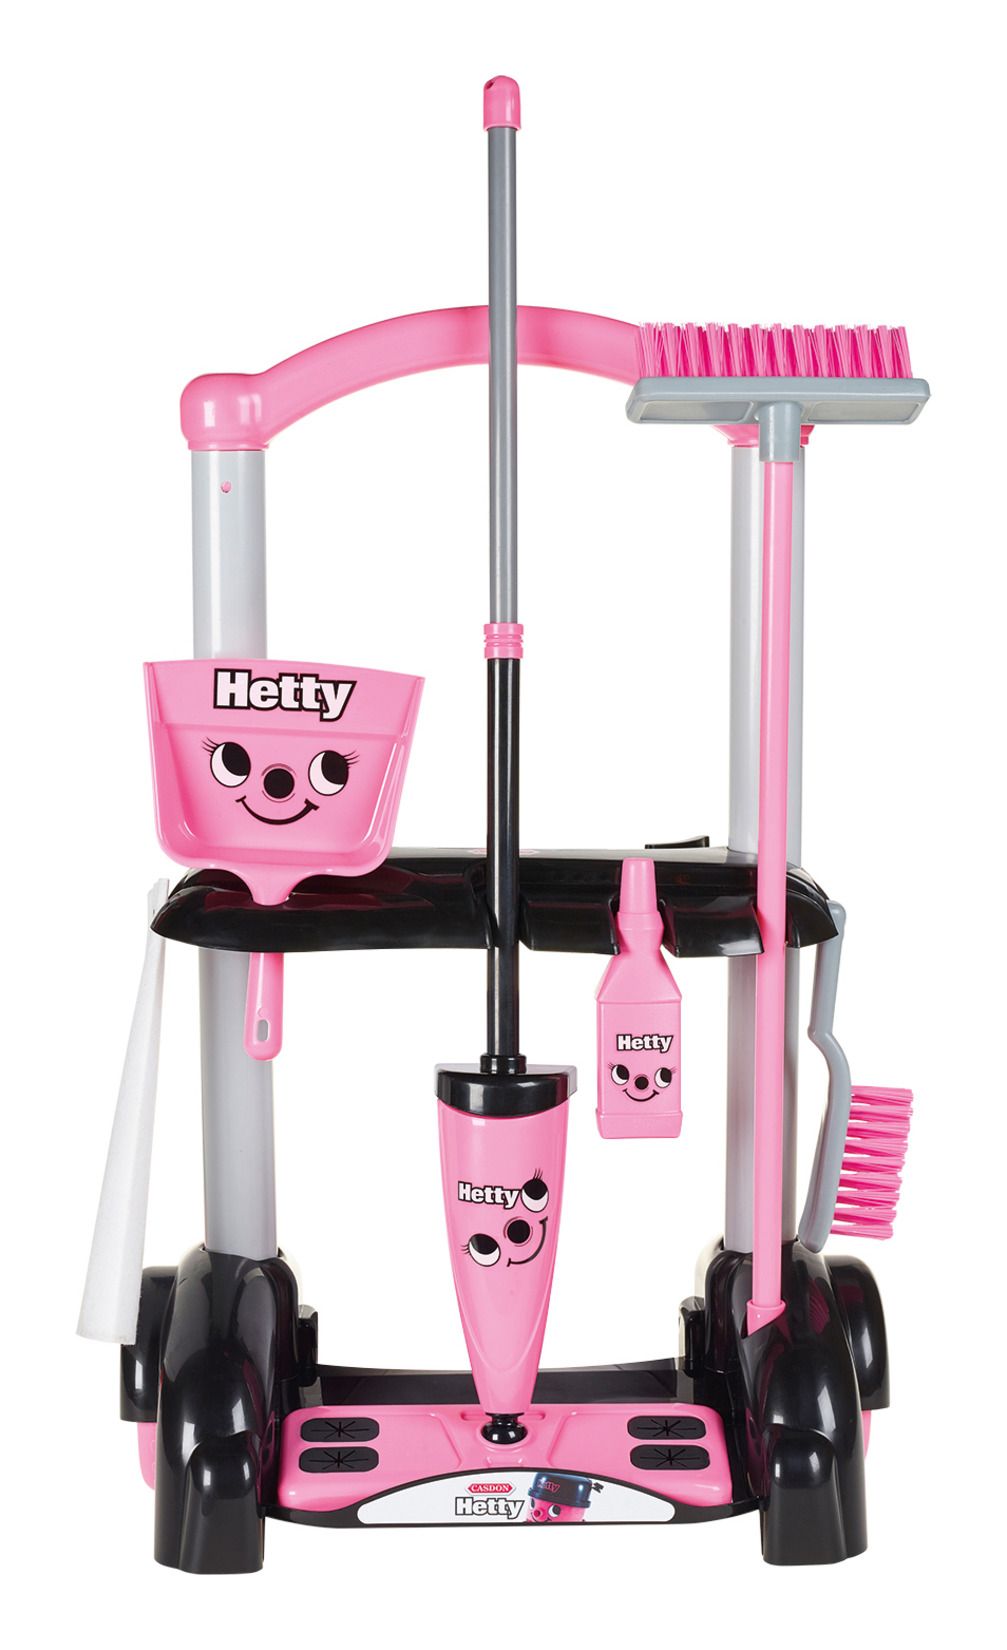 Casdon Hetty Cleaning Trolley